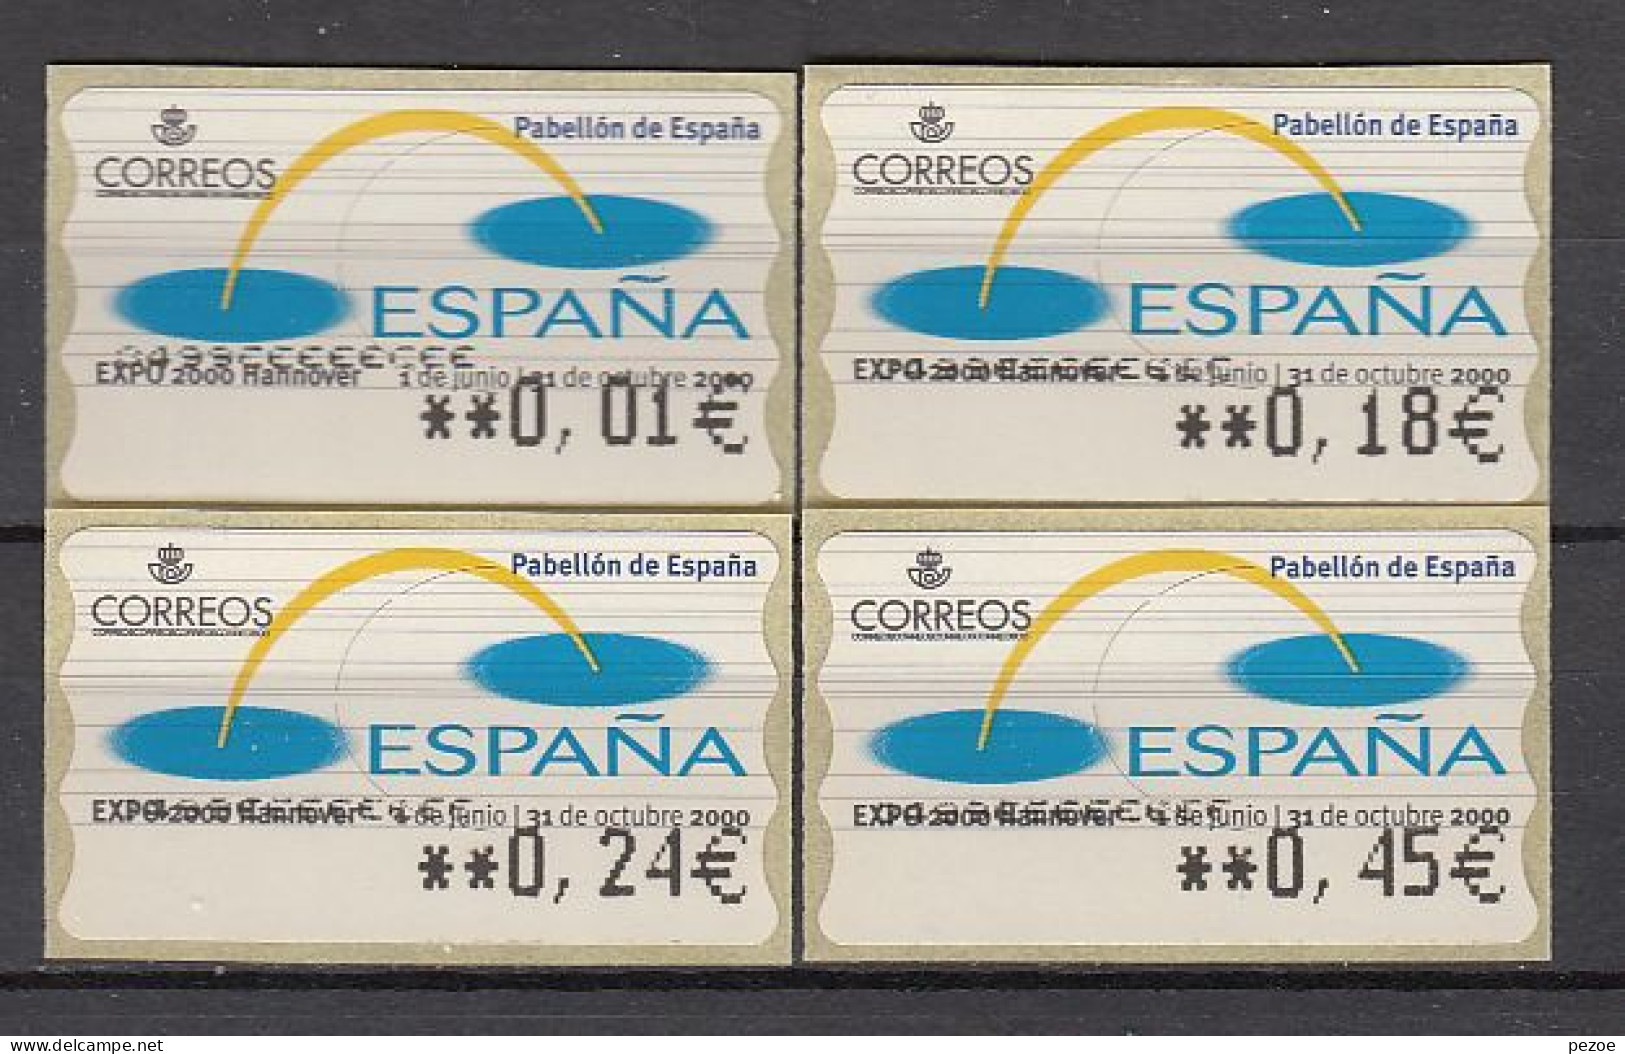 Spanien / ATM :  ATM  123 ** - Machine Labels [ATM]